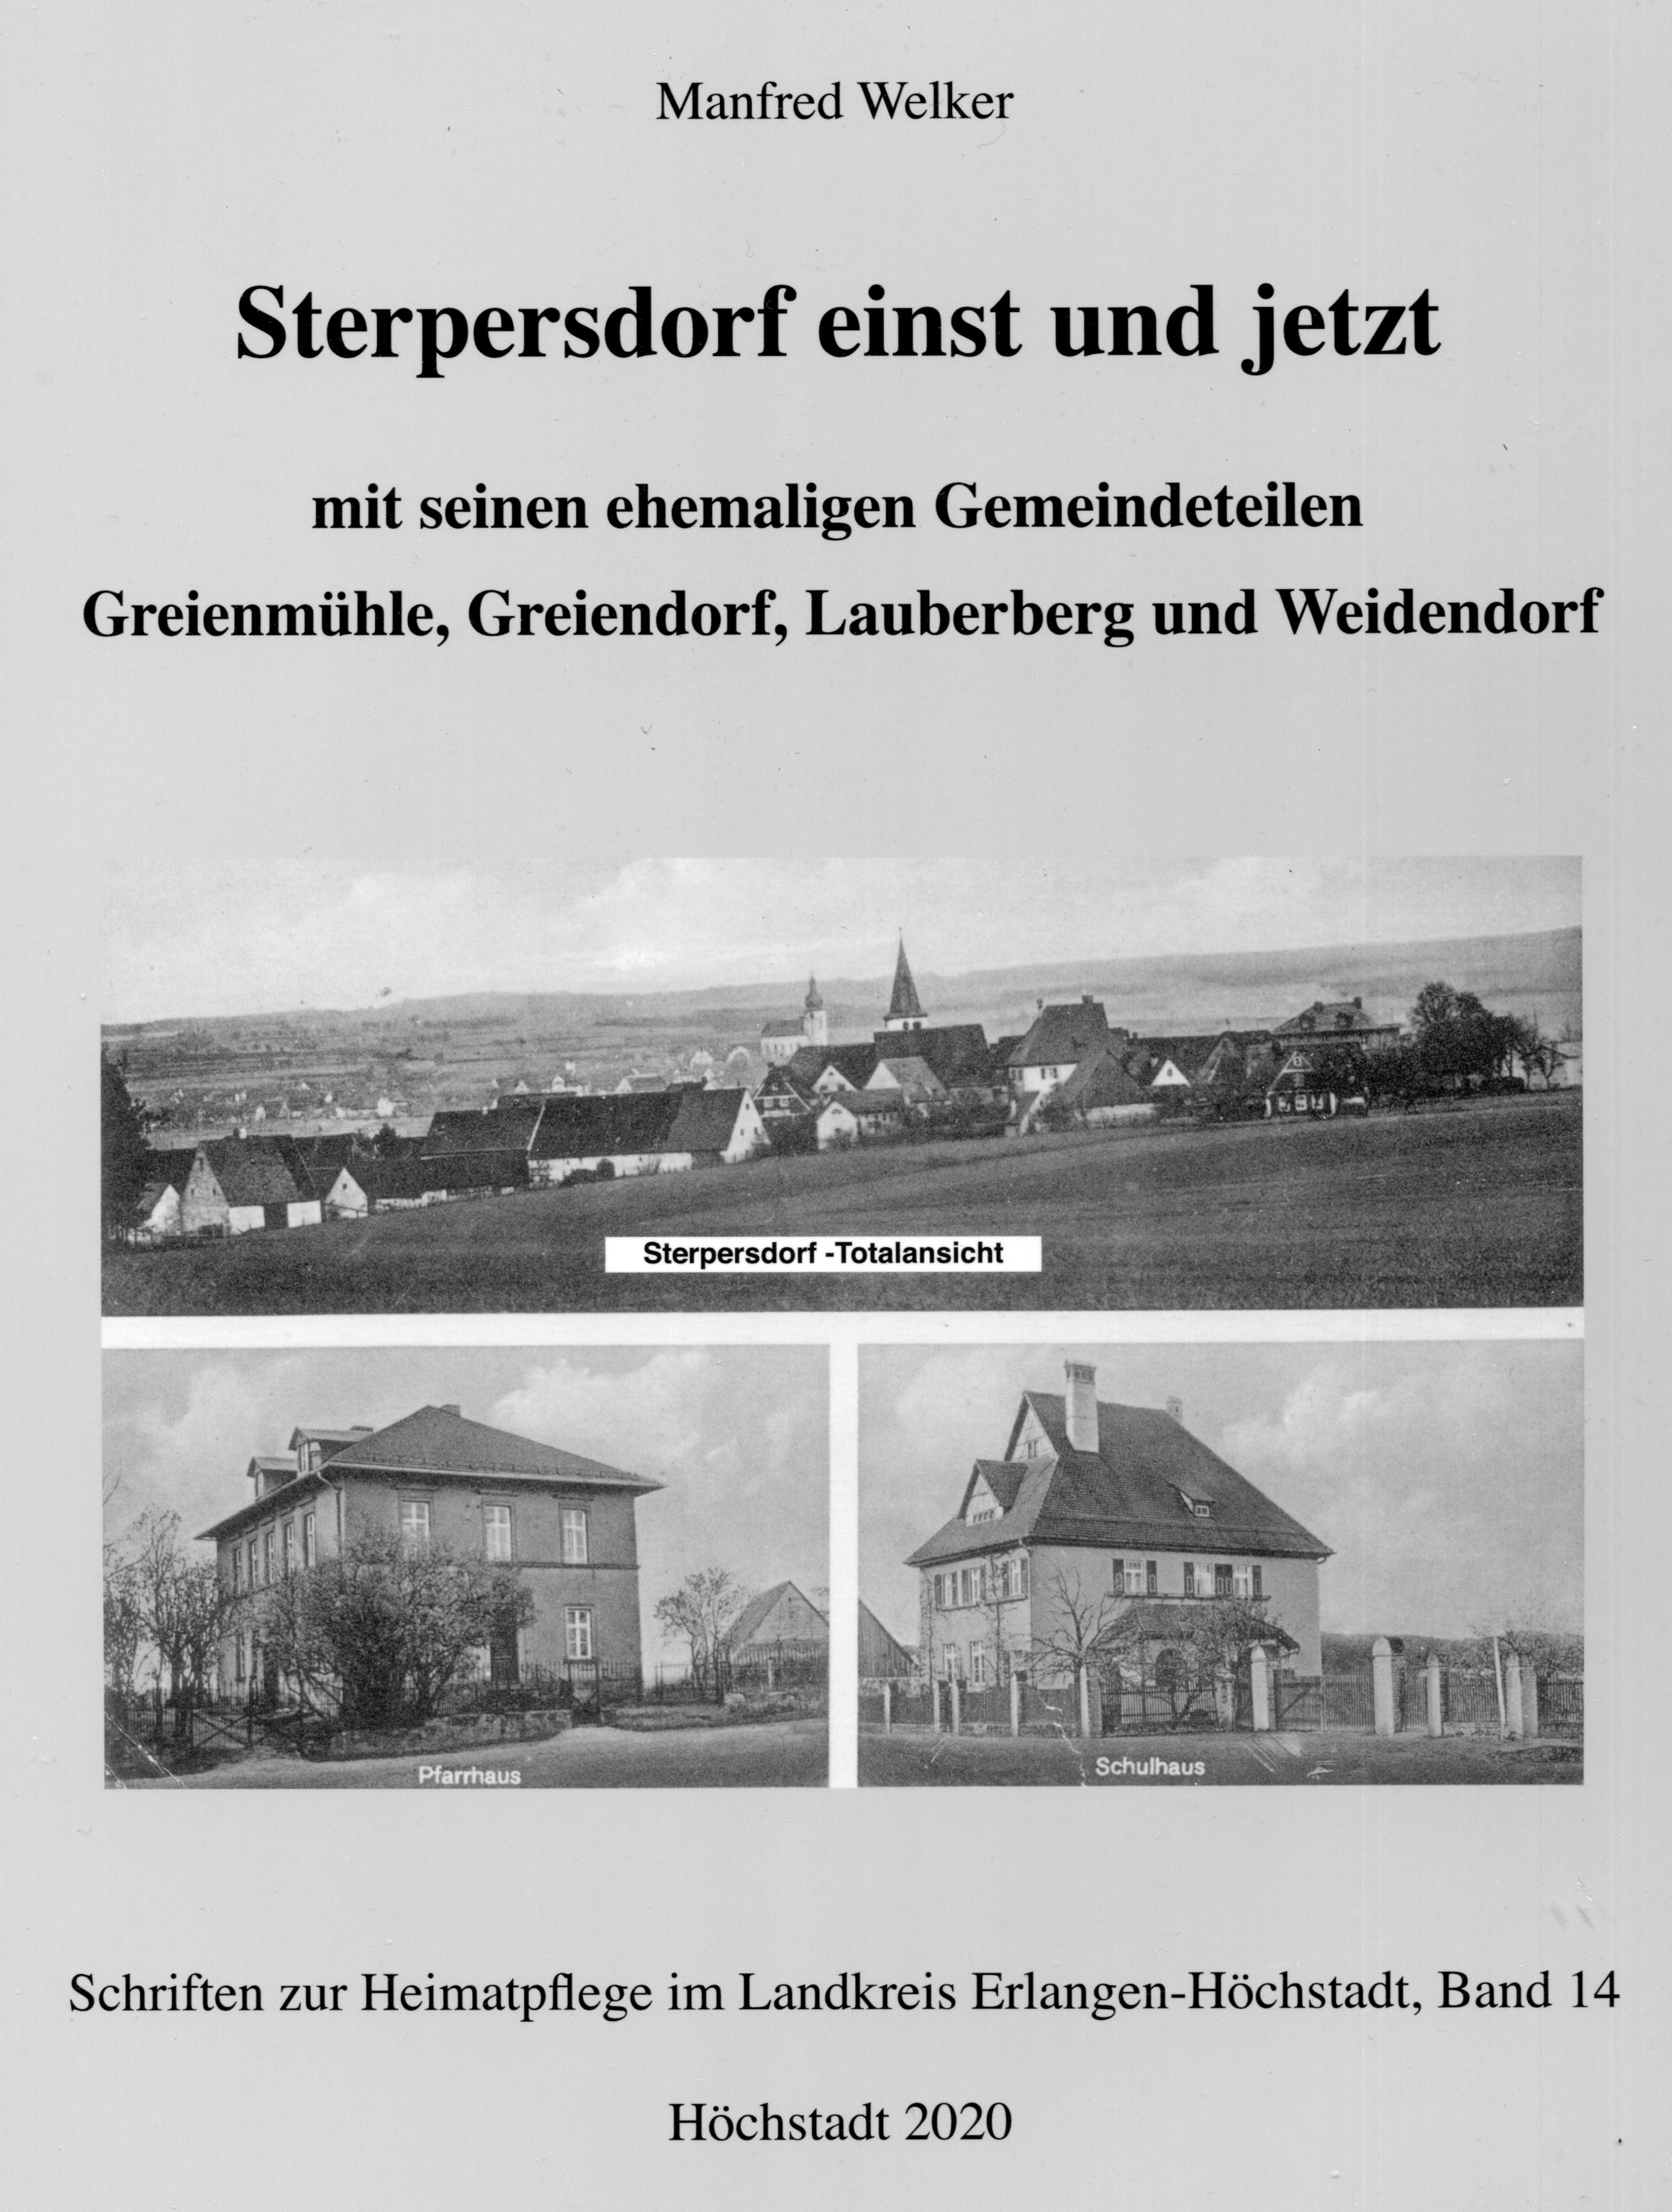 Heimatpflege ERH Schriften Band 14: Sterpersdorf einst & jetzt - 40 Euro